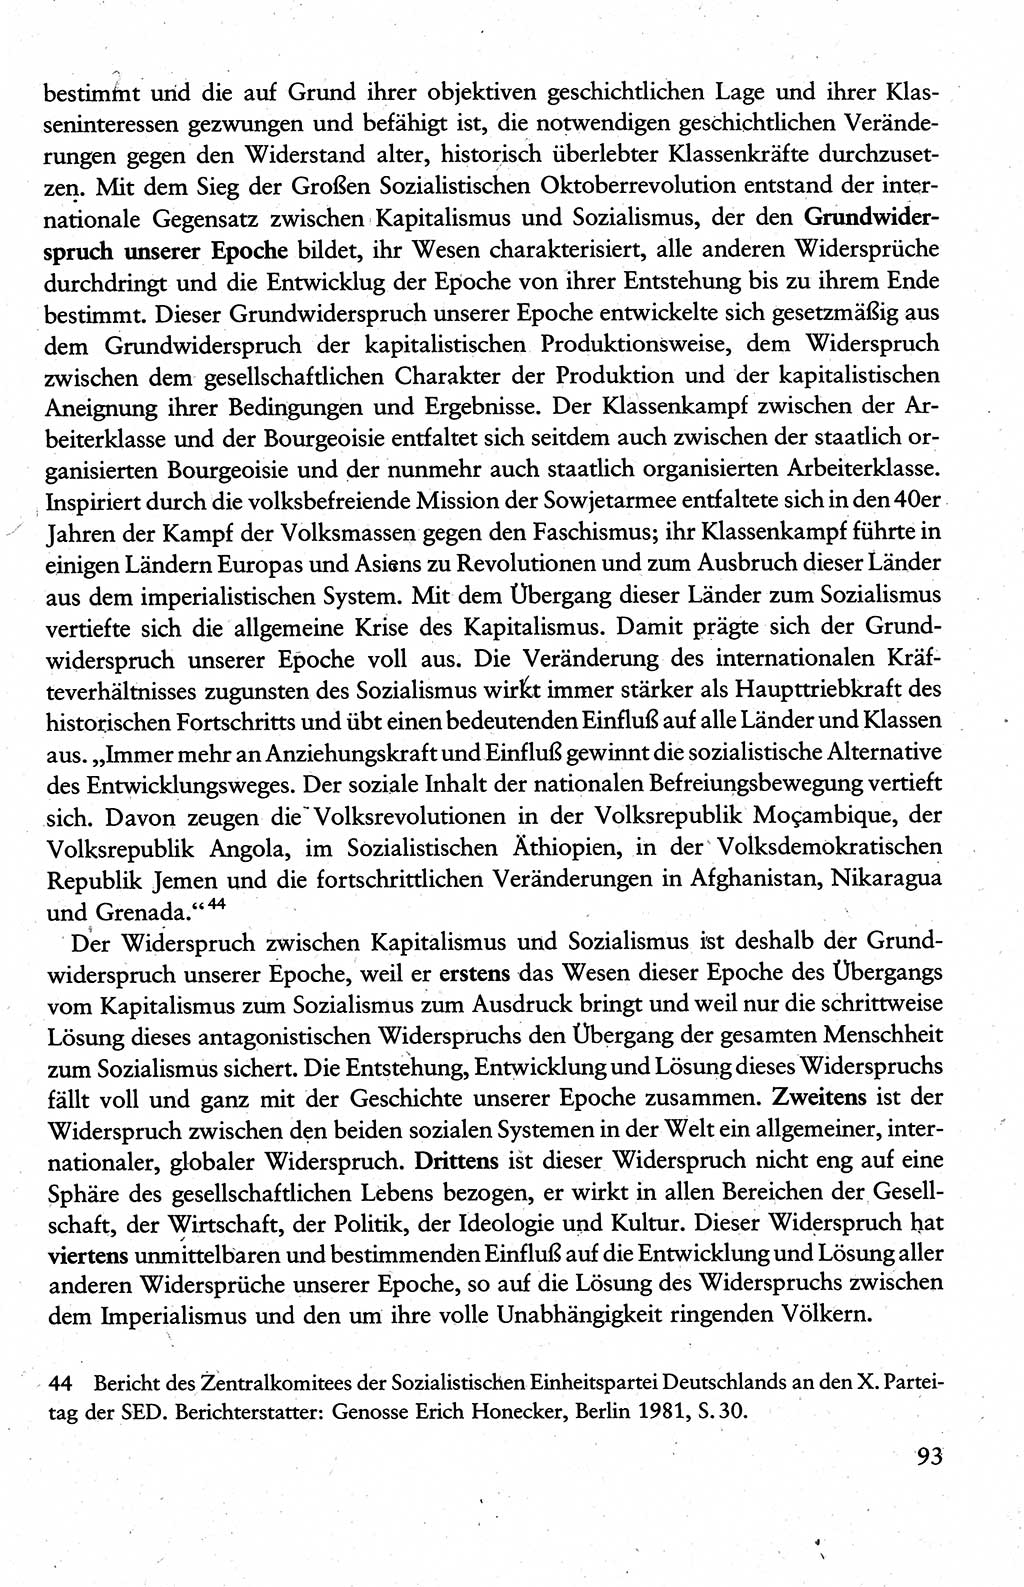 Wissenschaftlicher Kommunismus [Deutsche Demokratische Republik (DDR)], Lehrbuch für das marxistisch-leninistische Grundlagenstudium 1983, Seite 93 (Wiss. Komm. DDR Lb. 1983, S. 93)